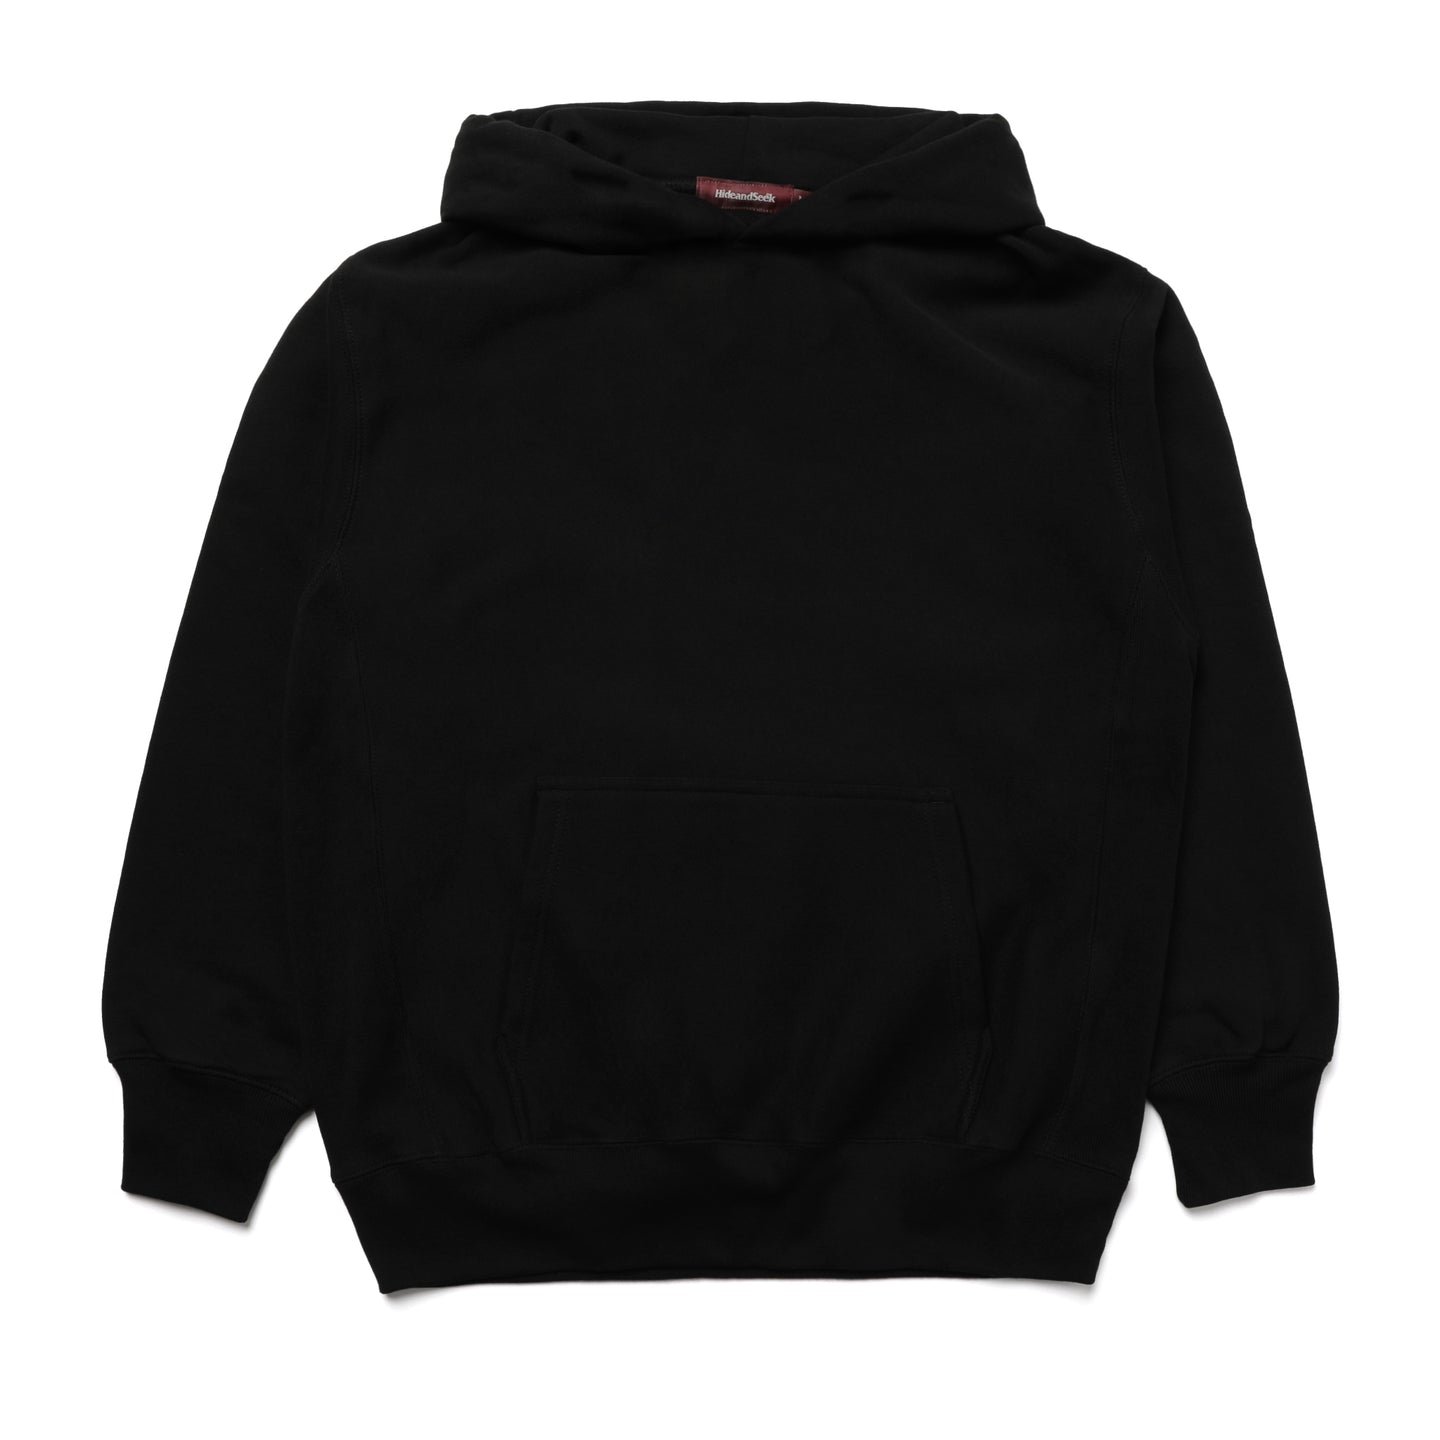 Hide and Seek HS Hooded Sweatshirt Black